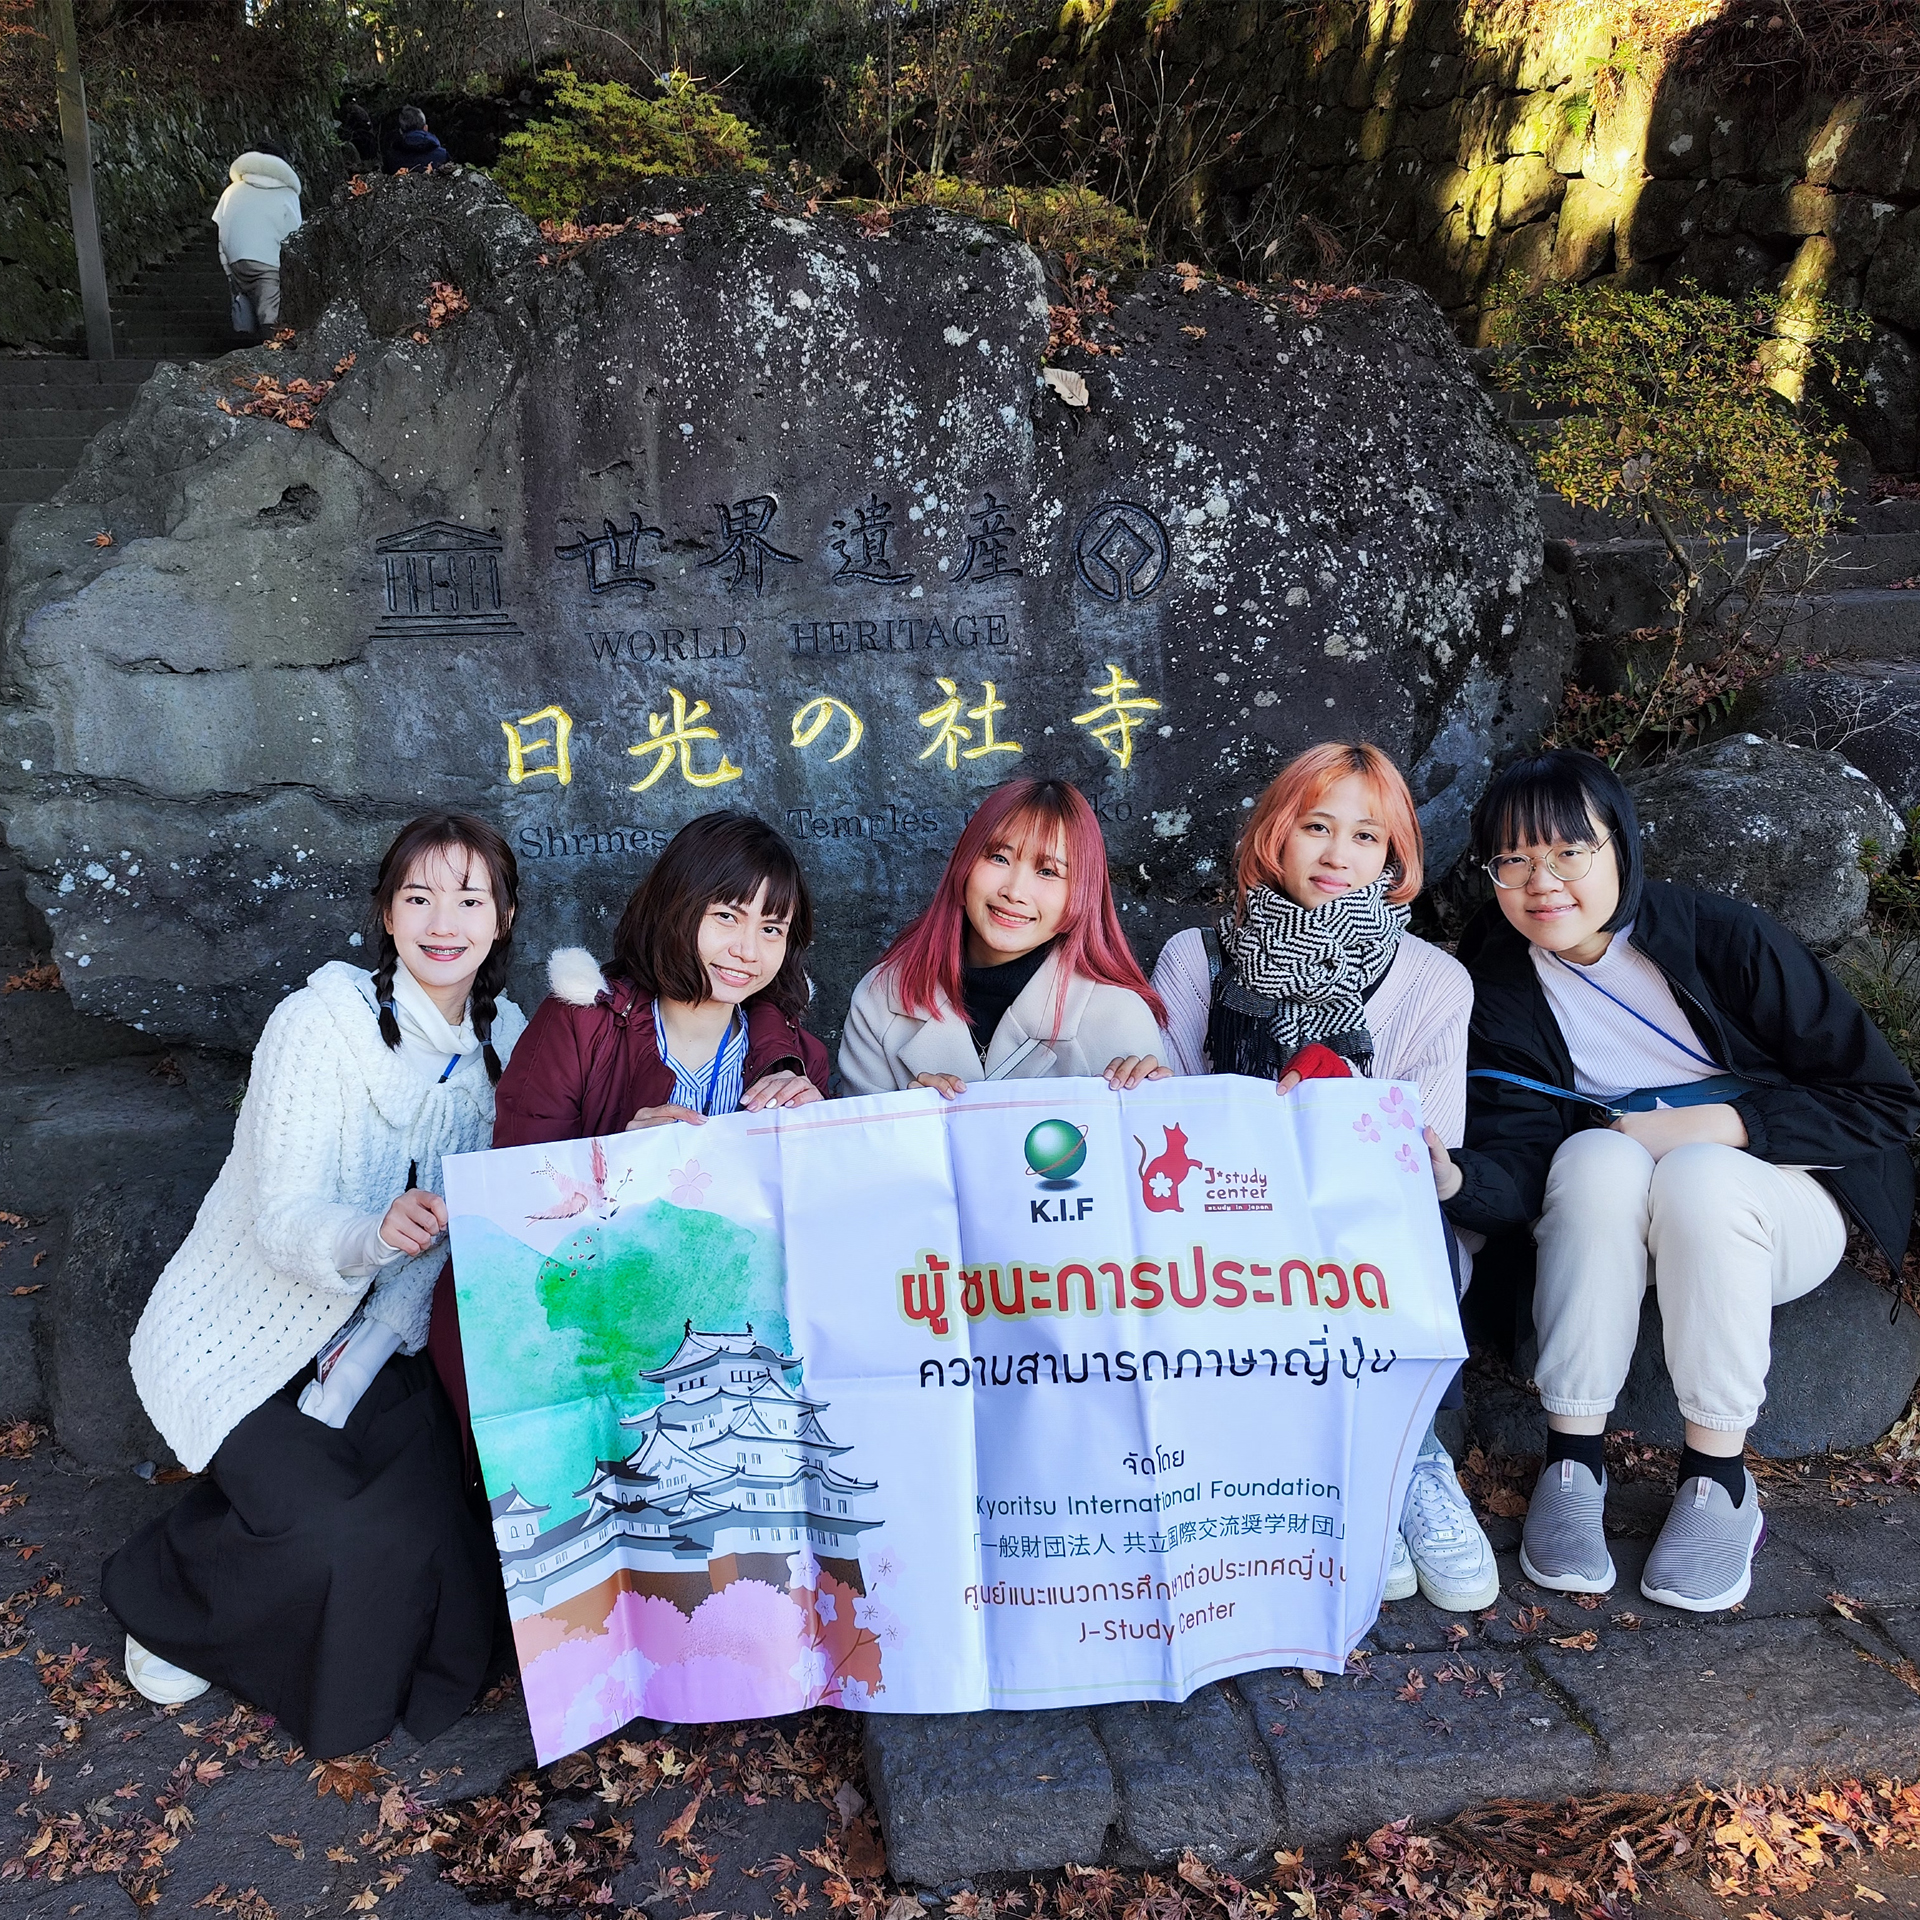 「第11回 日本体験旅行レポート 」 การเดินทางของผู้ชนะการประกวดความสามารถทางด้านภาษาญี่ปุ่น ครั้งที่ 11 13/12/2023	